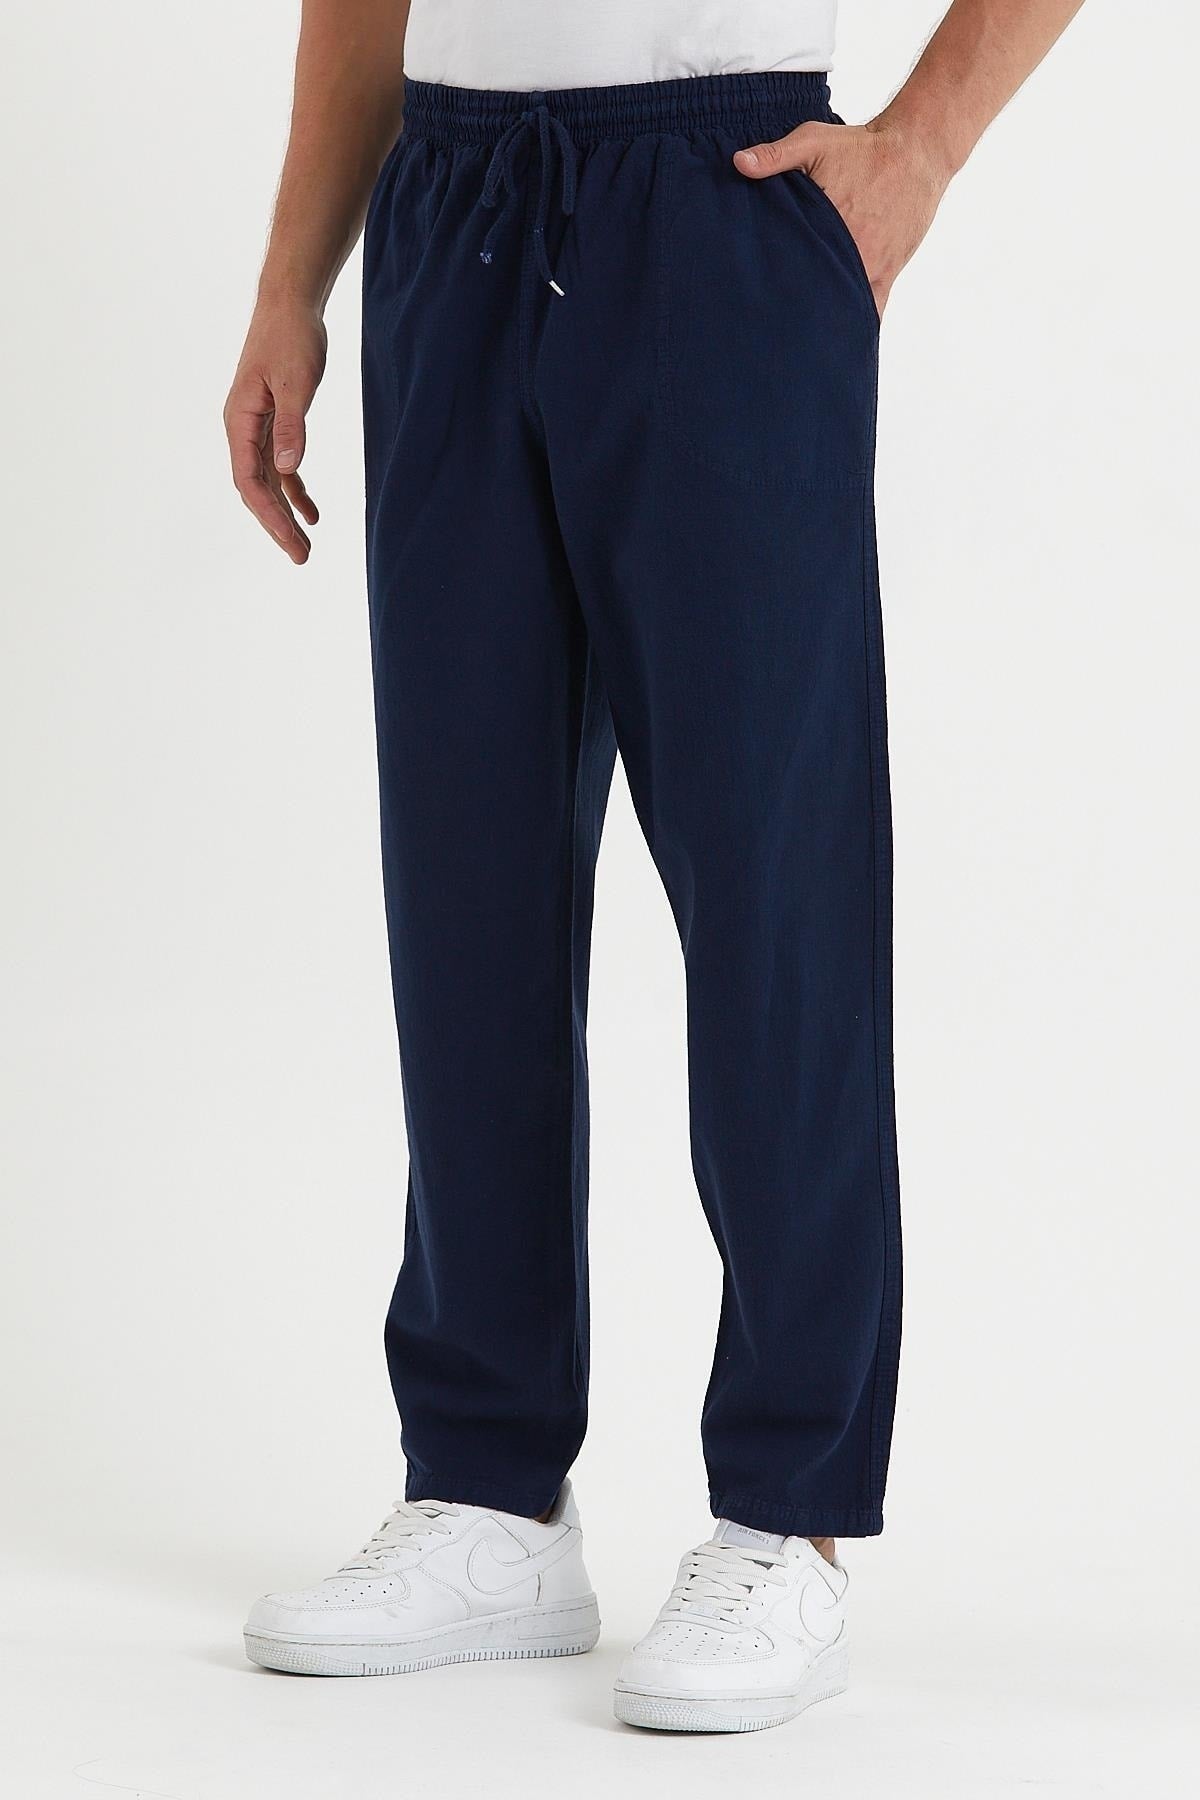 Men's Navy Blue Color Linen Trousers